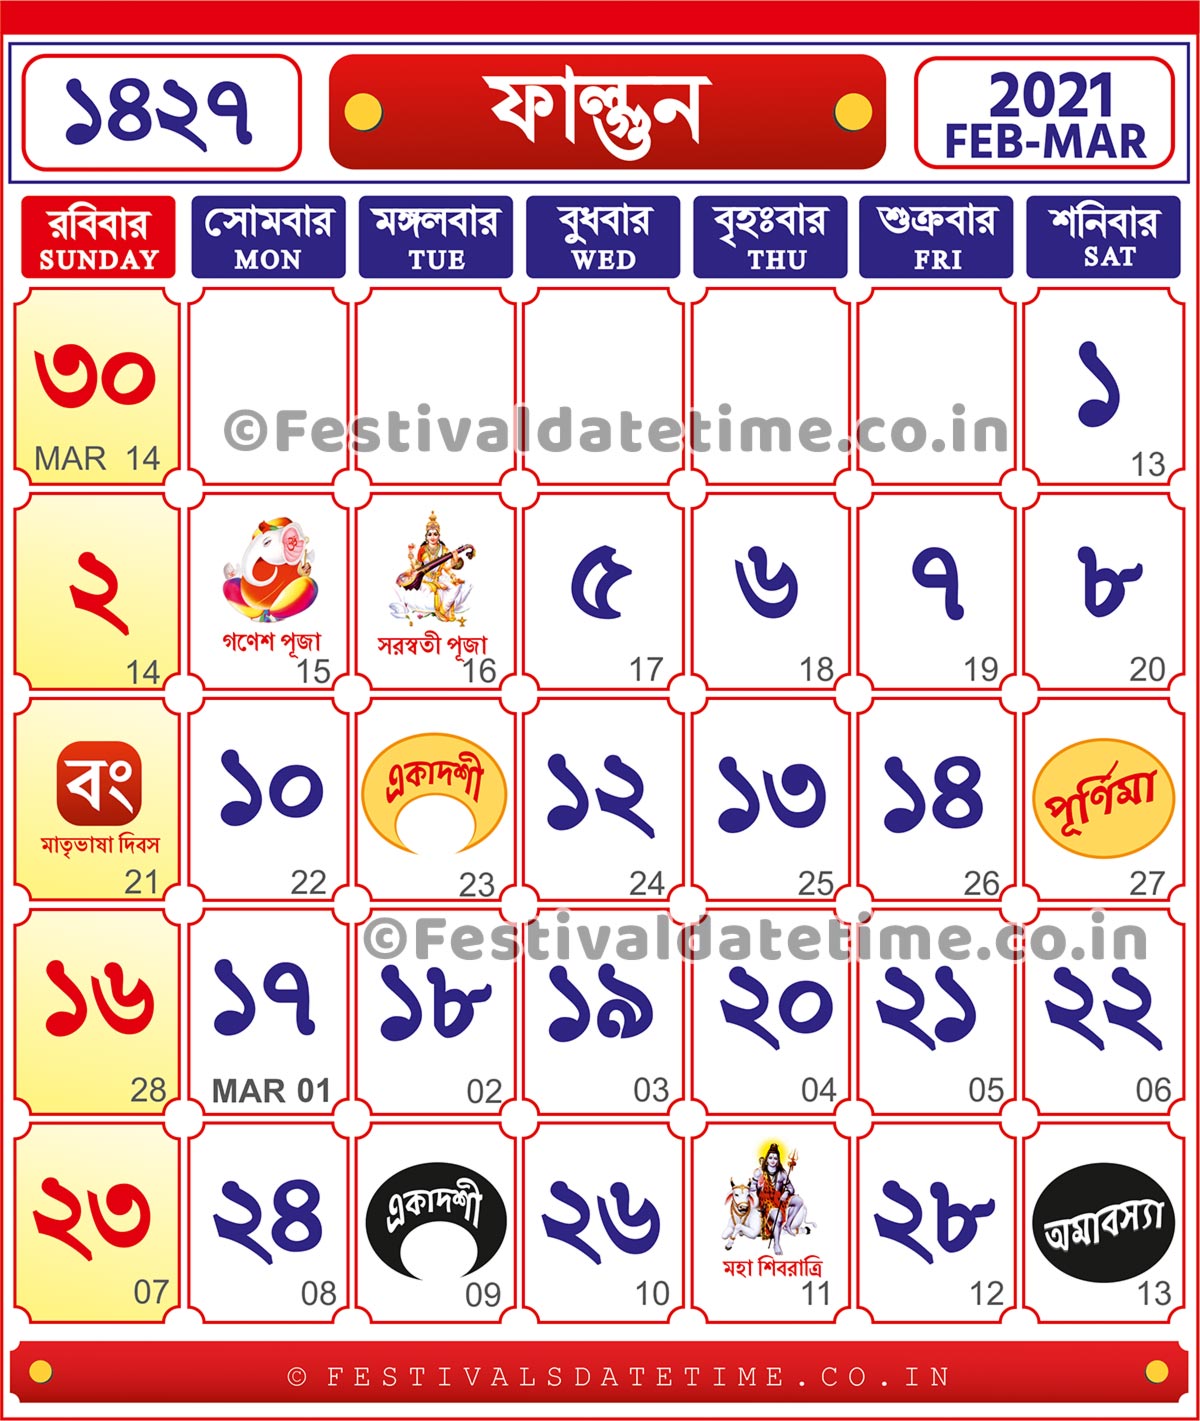 2021 calendar with bengali date 1427 Bengali Calendar Phalgun 1427 2021 2022 Bengali Calendar Download Bengali Calendar 1427 Festivals Date Time 2021 calendar with bengali date